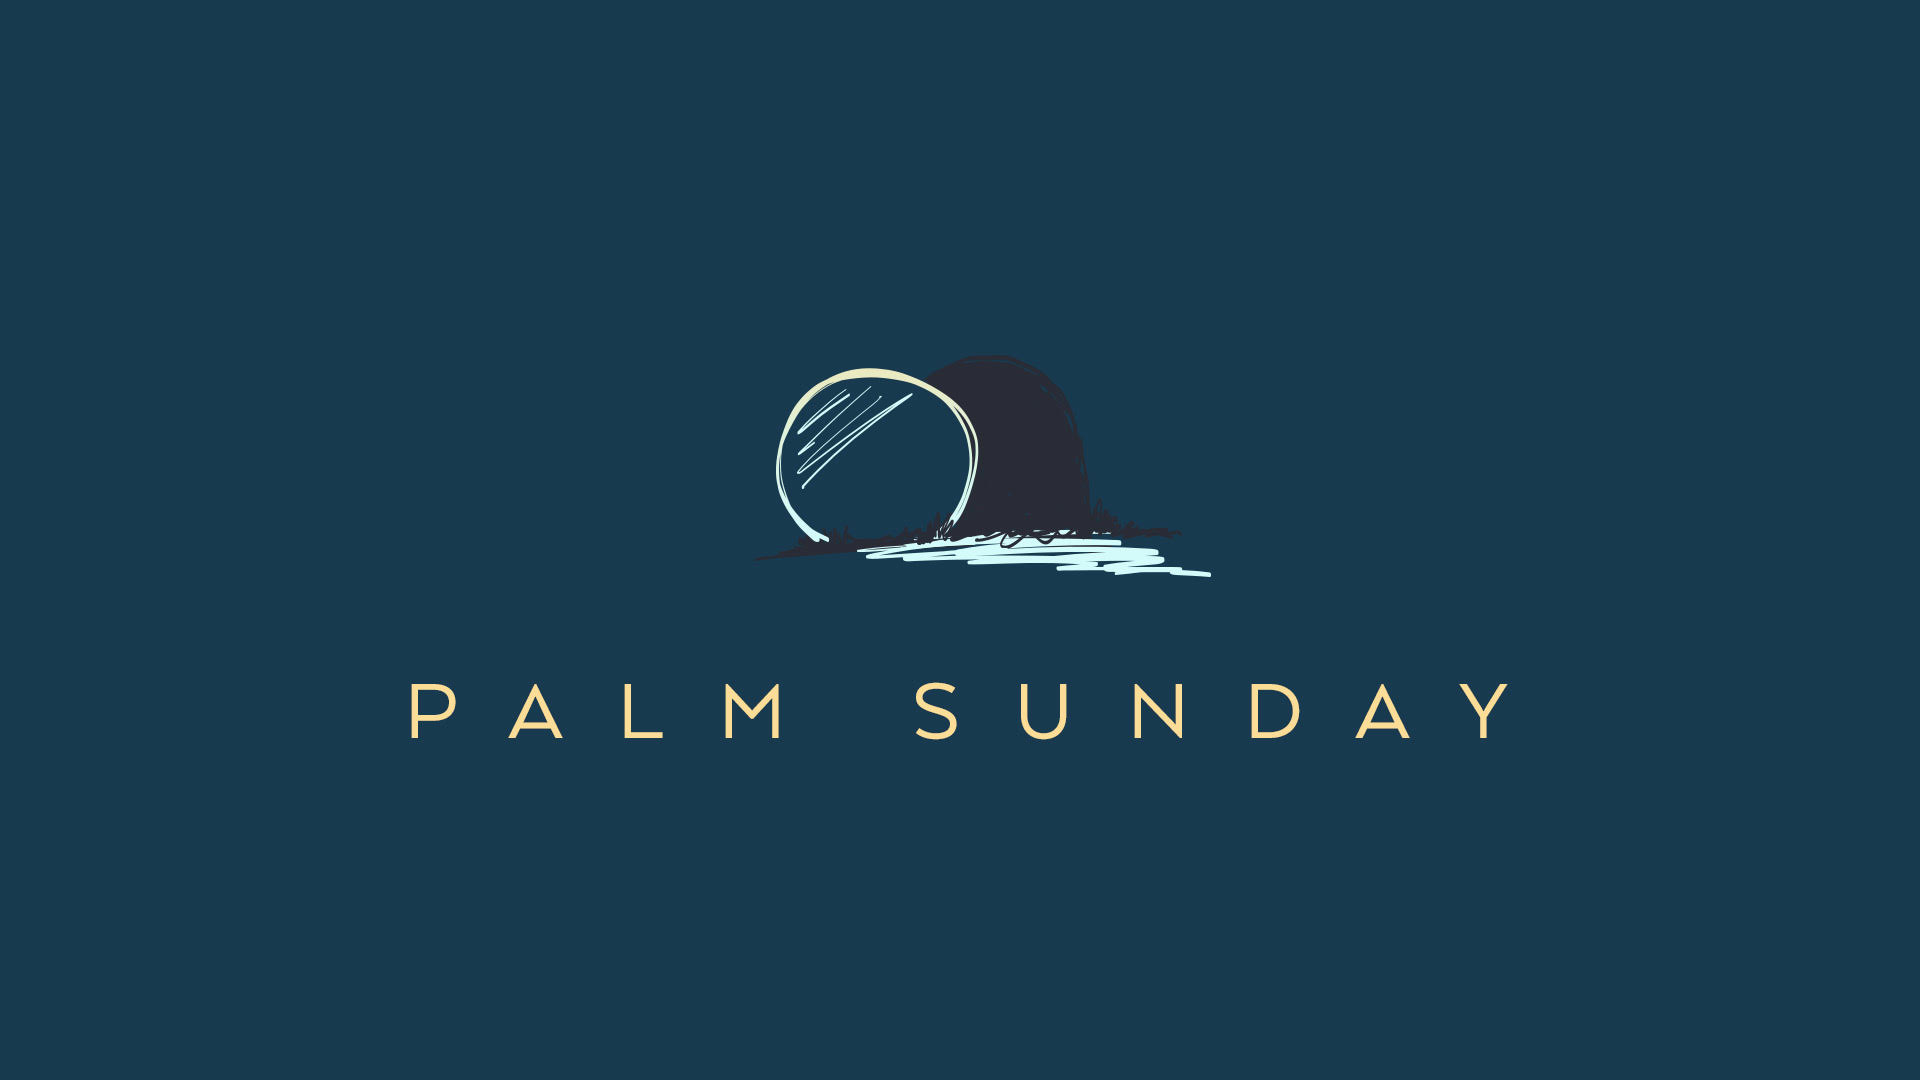 Palm Sunday_1920x1080 image